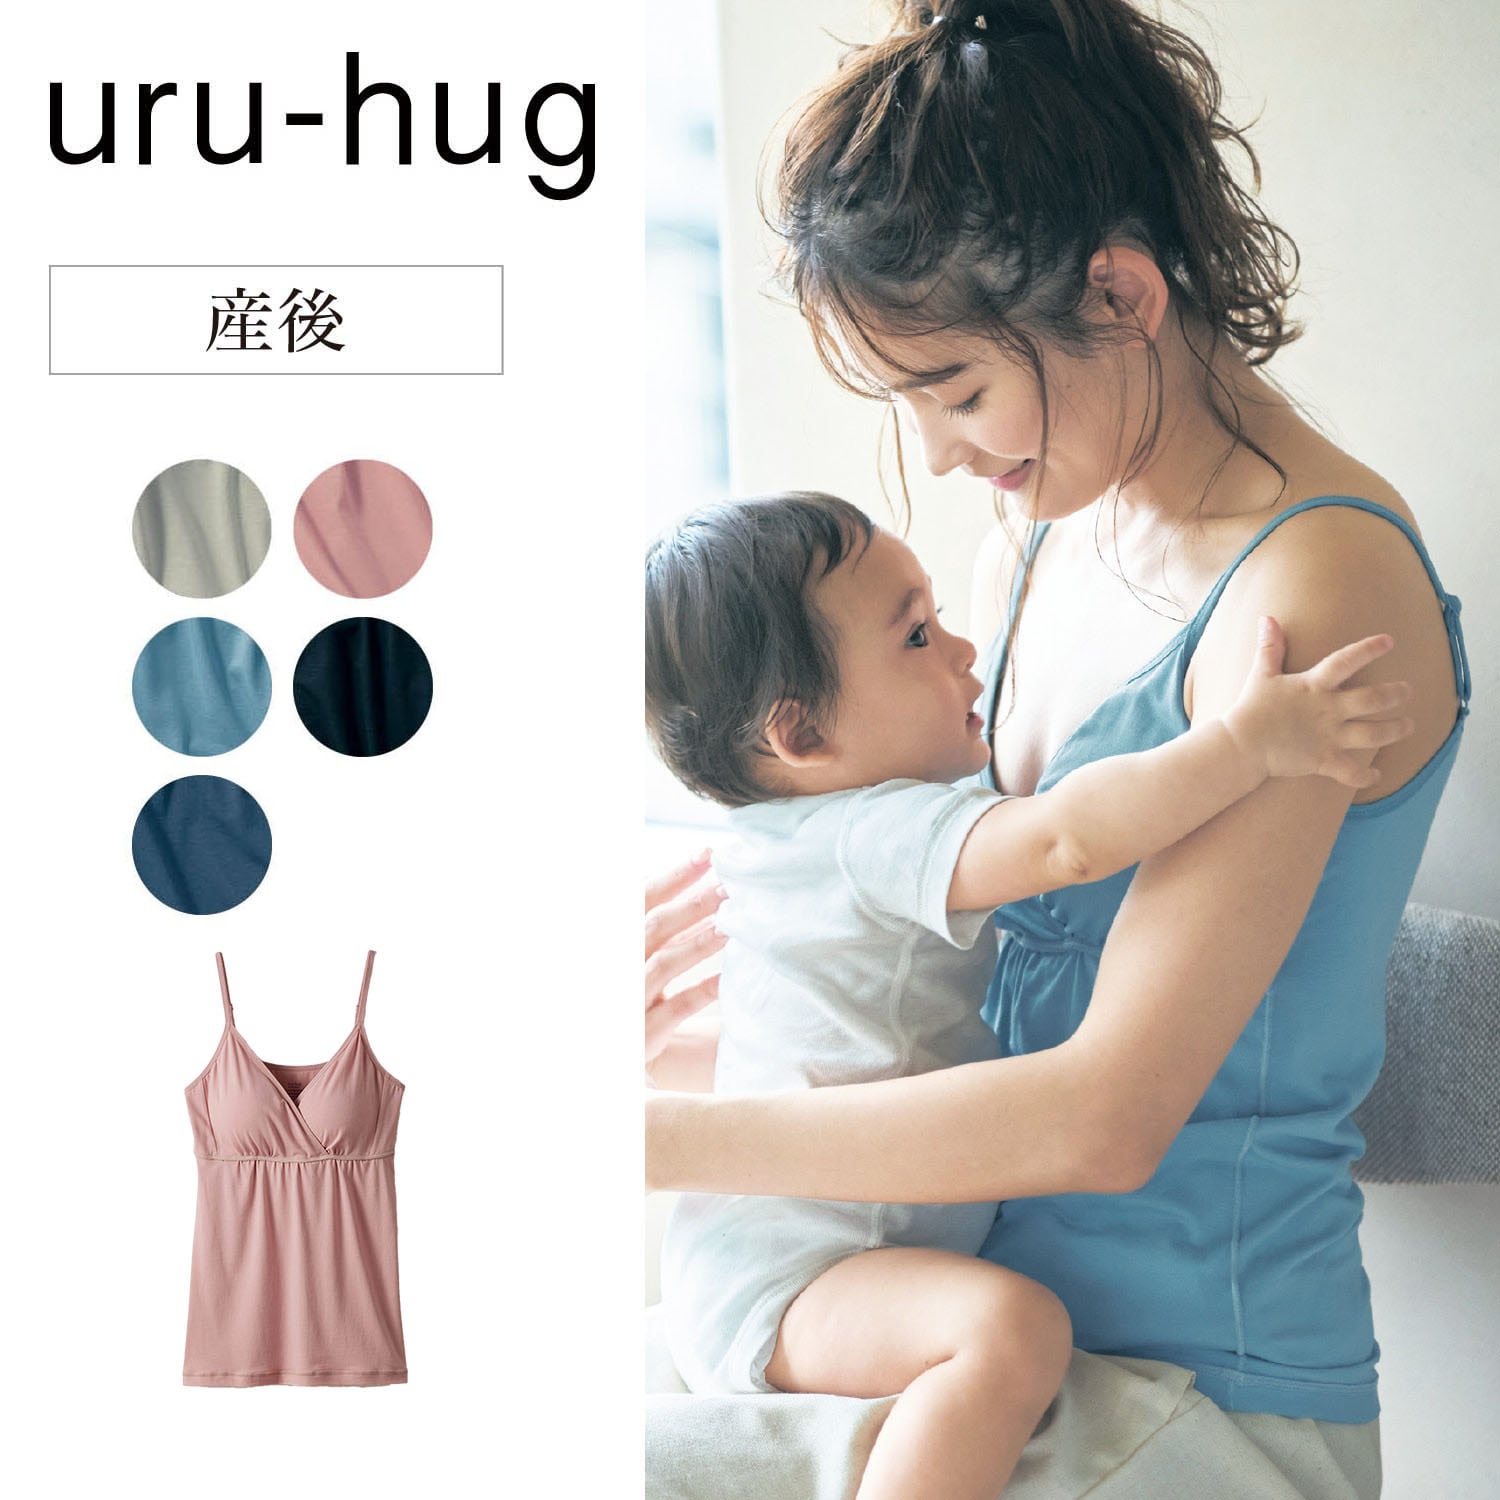 【ウルハグ/uru-hug】授乳に便利!なめらか保湿素材の産後サイズ瞬間授乳ブラキャミソール画像